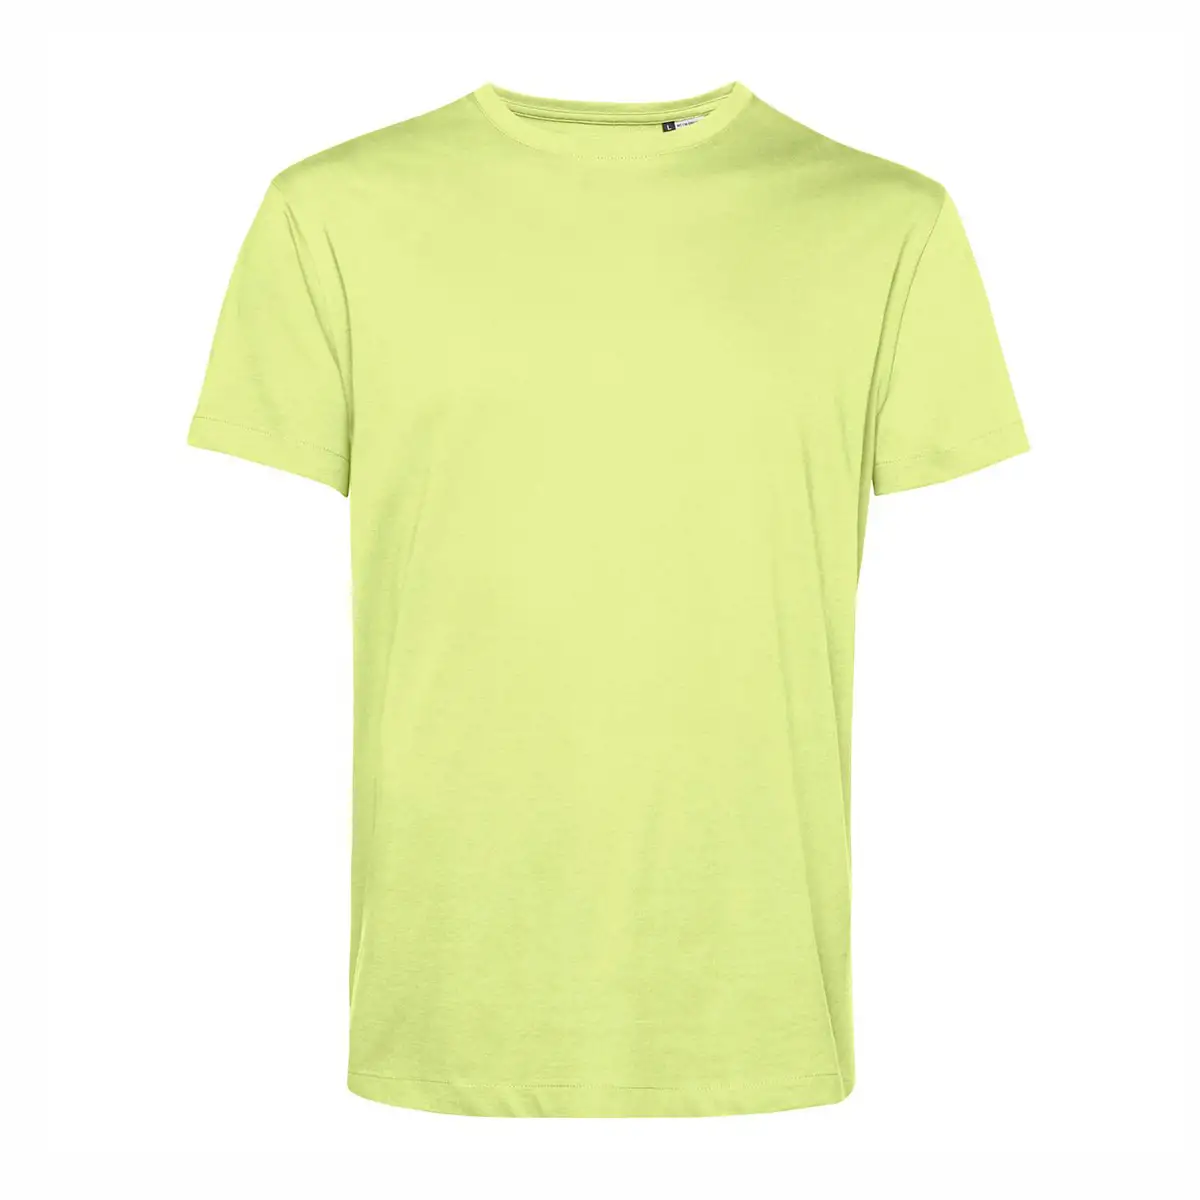 T-shirt colorata uomo cotone organico #Organic E150